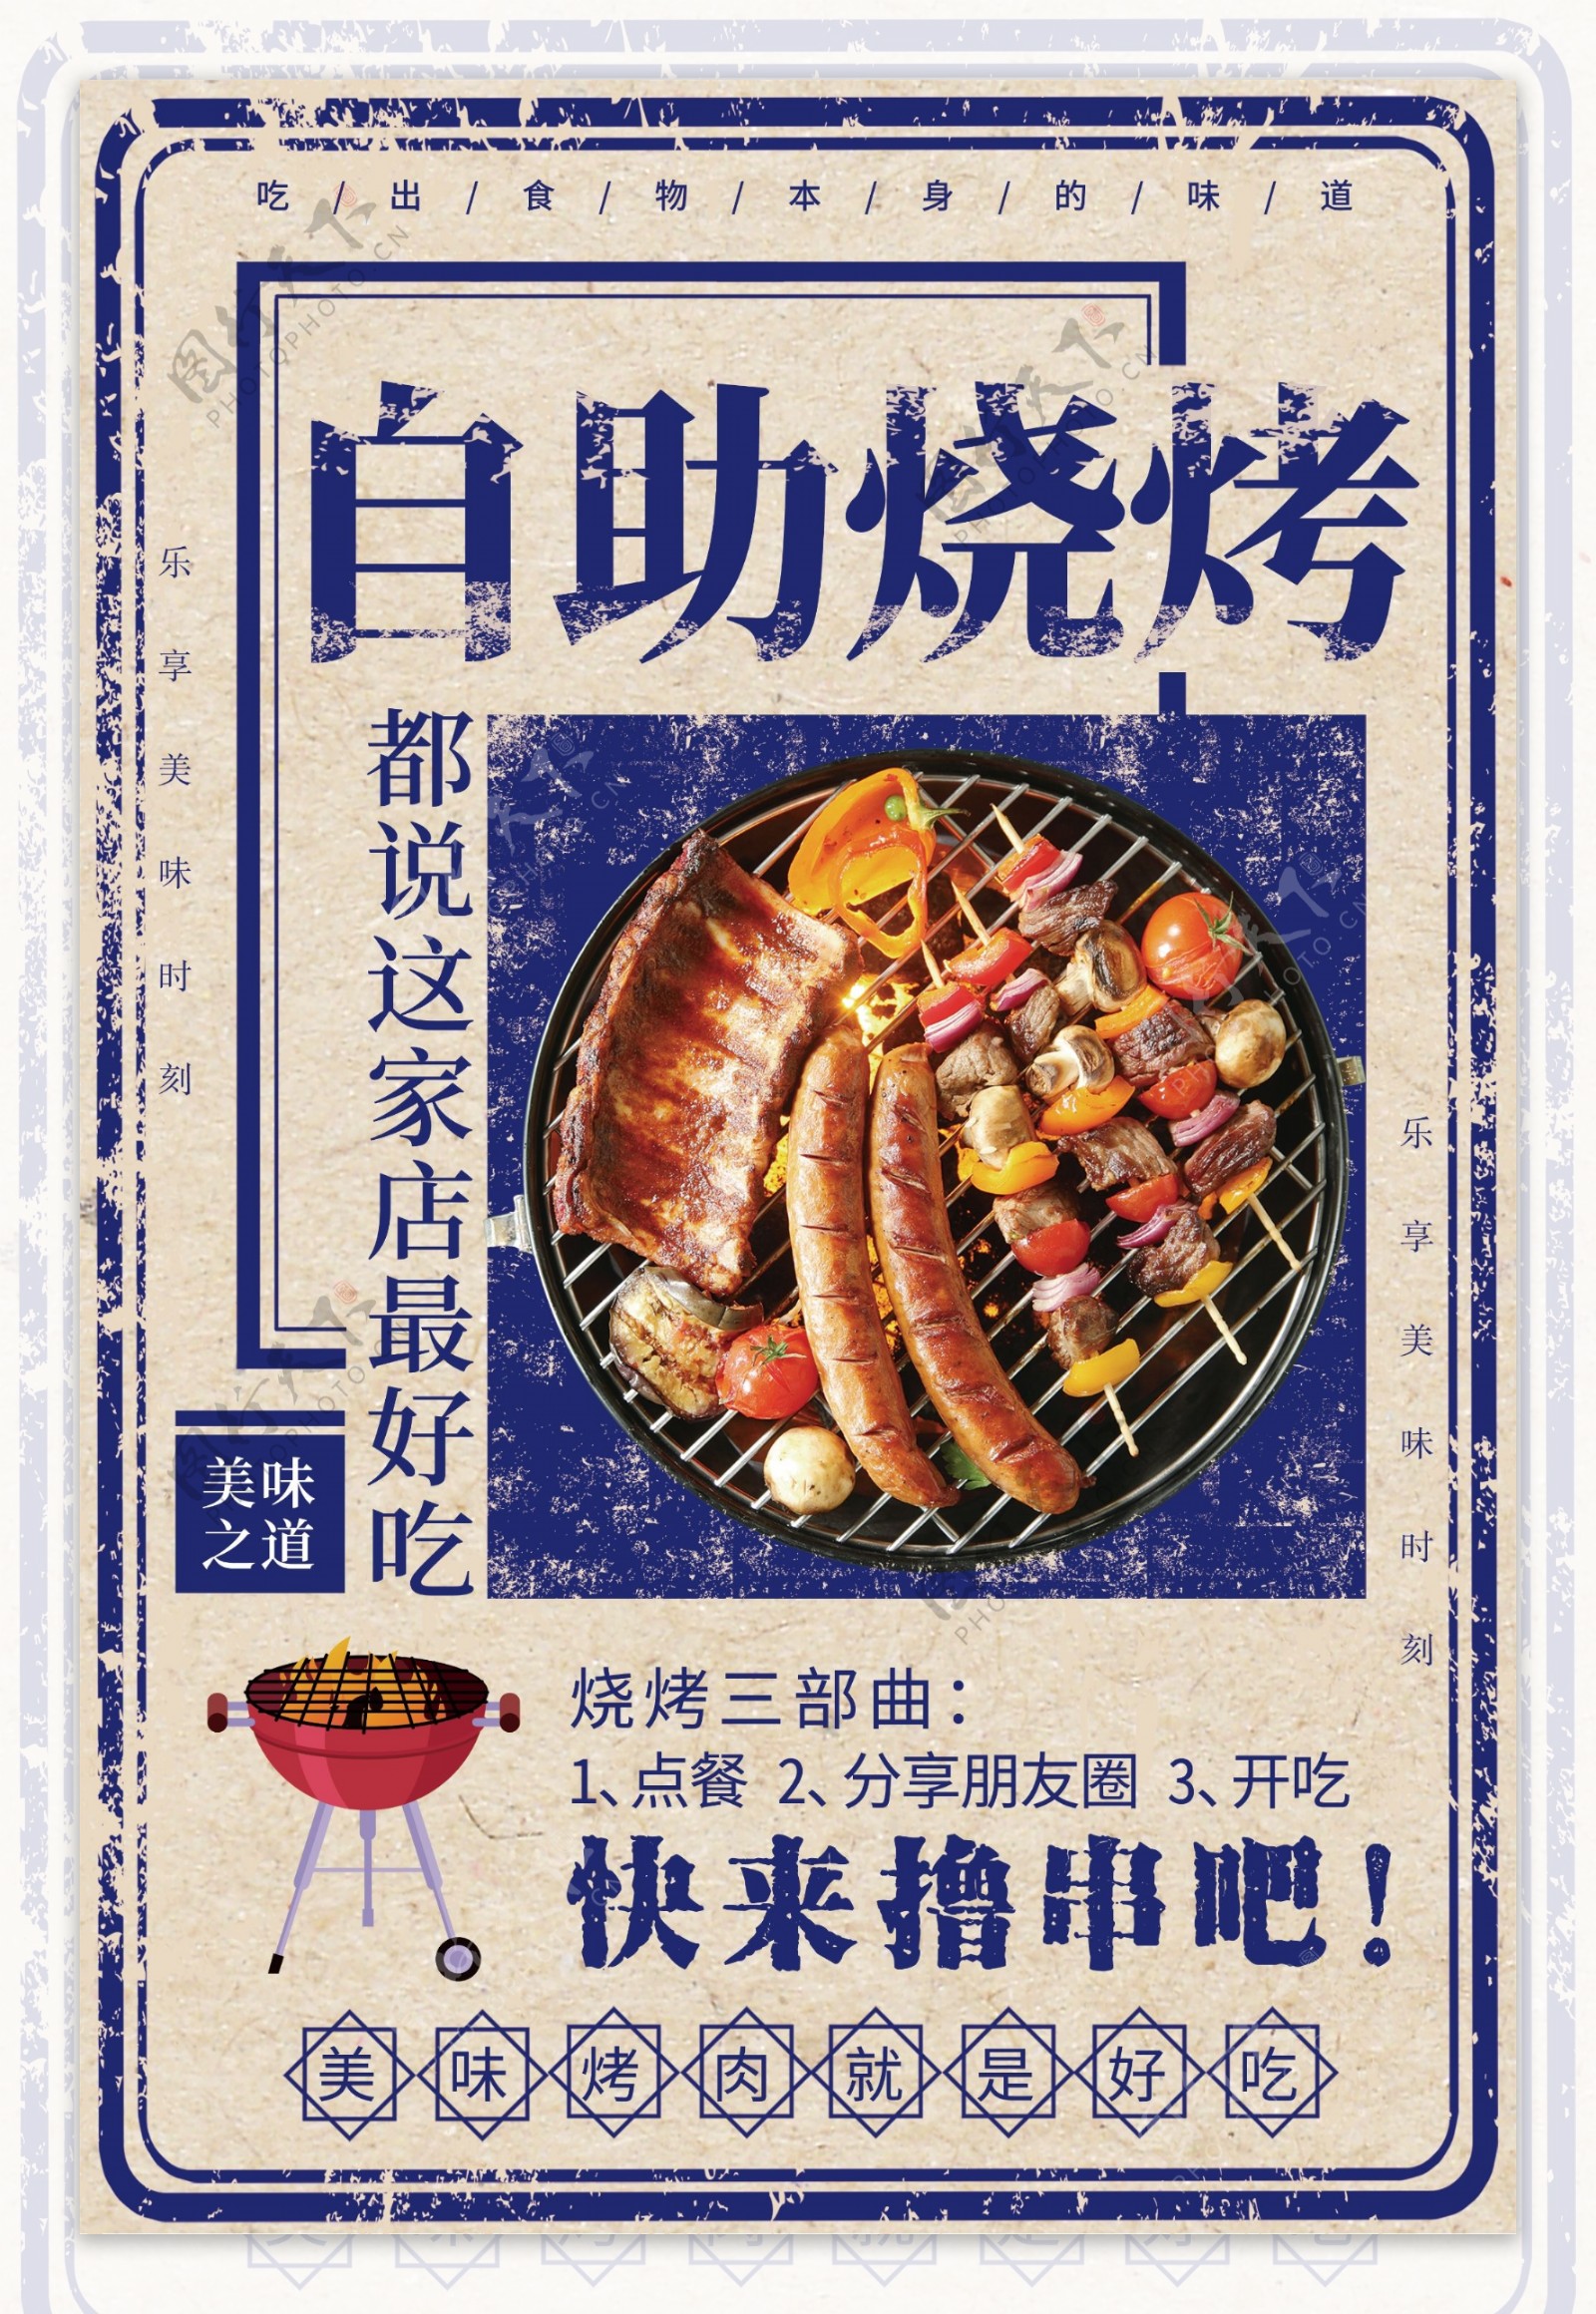 自助烧烤美食活动促销宣传海报